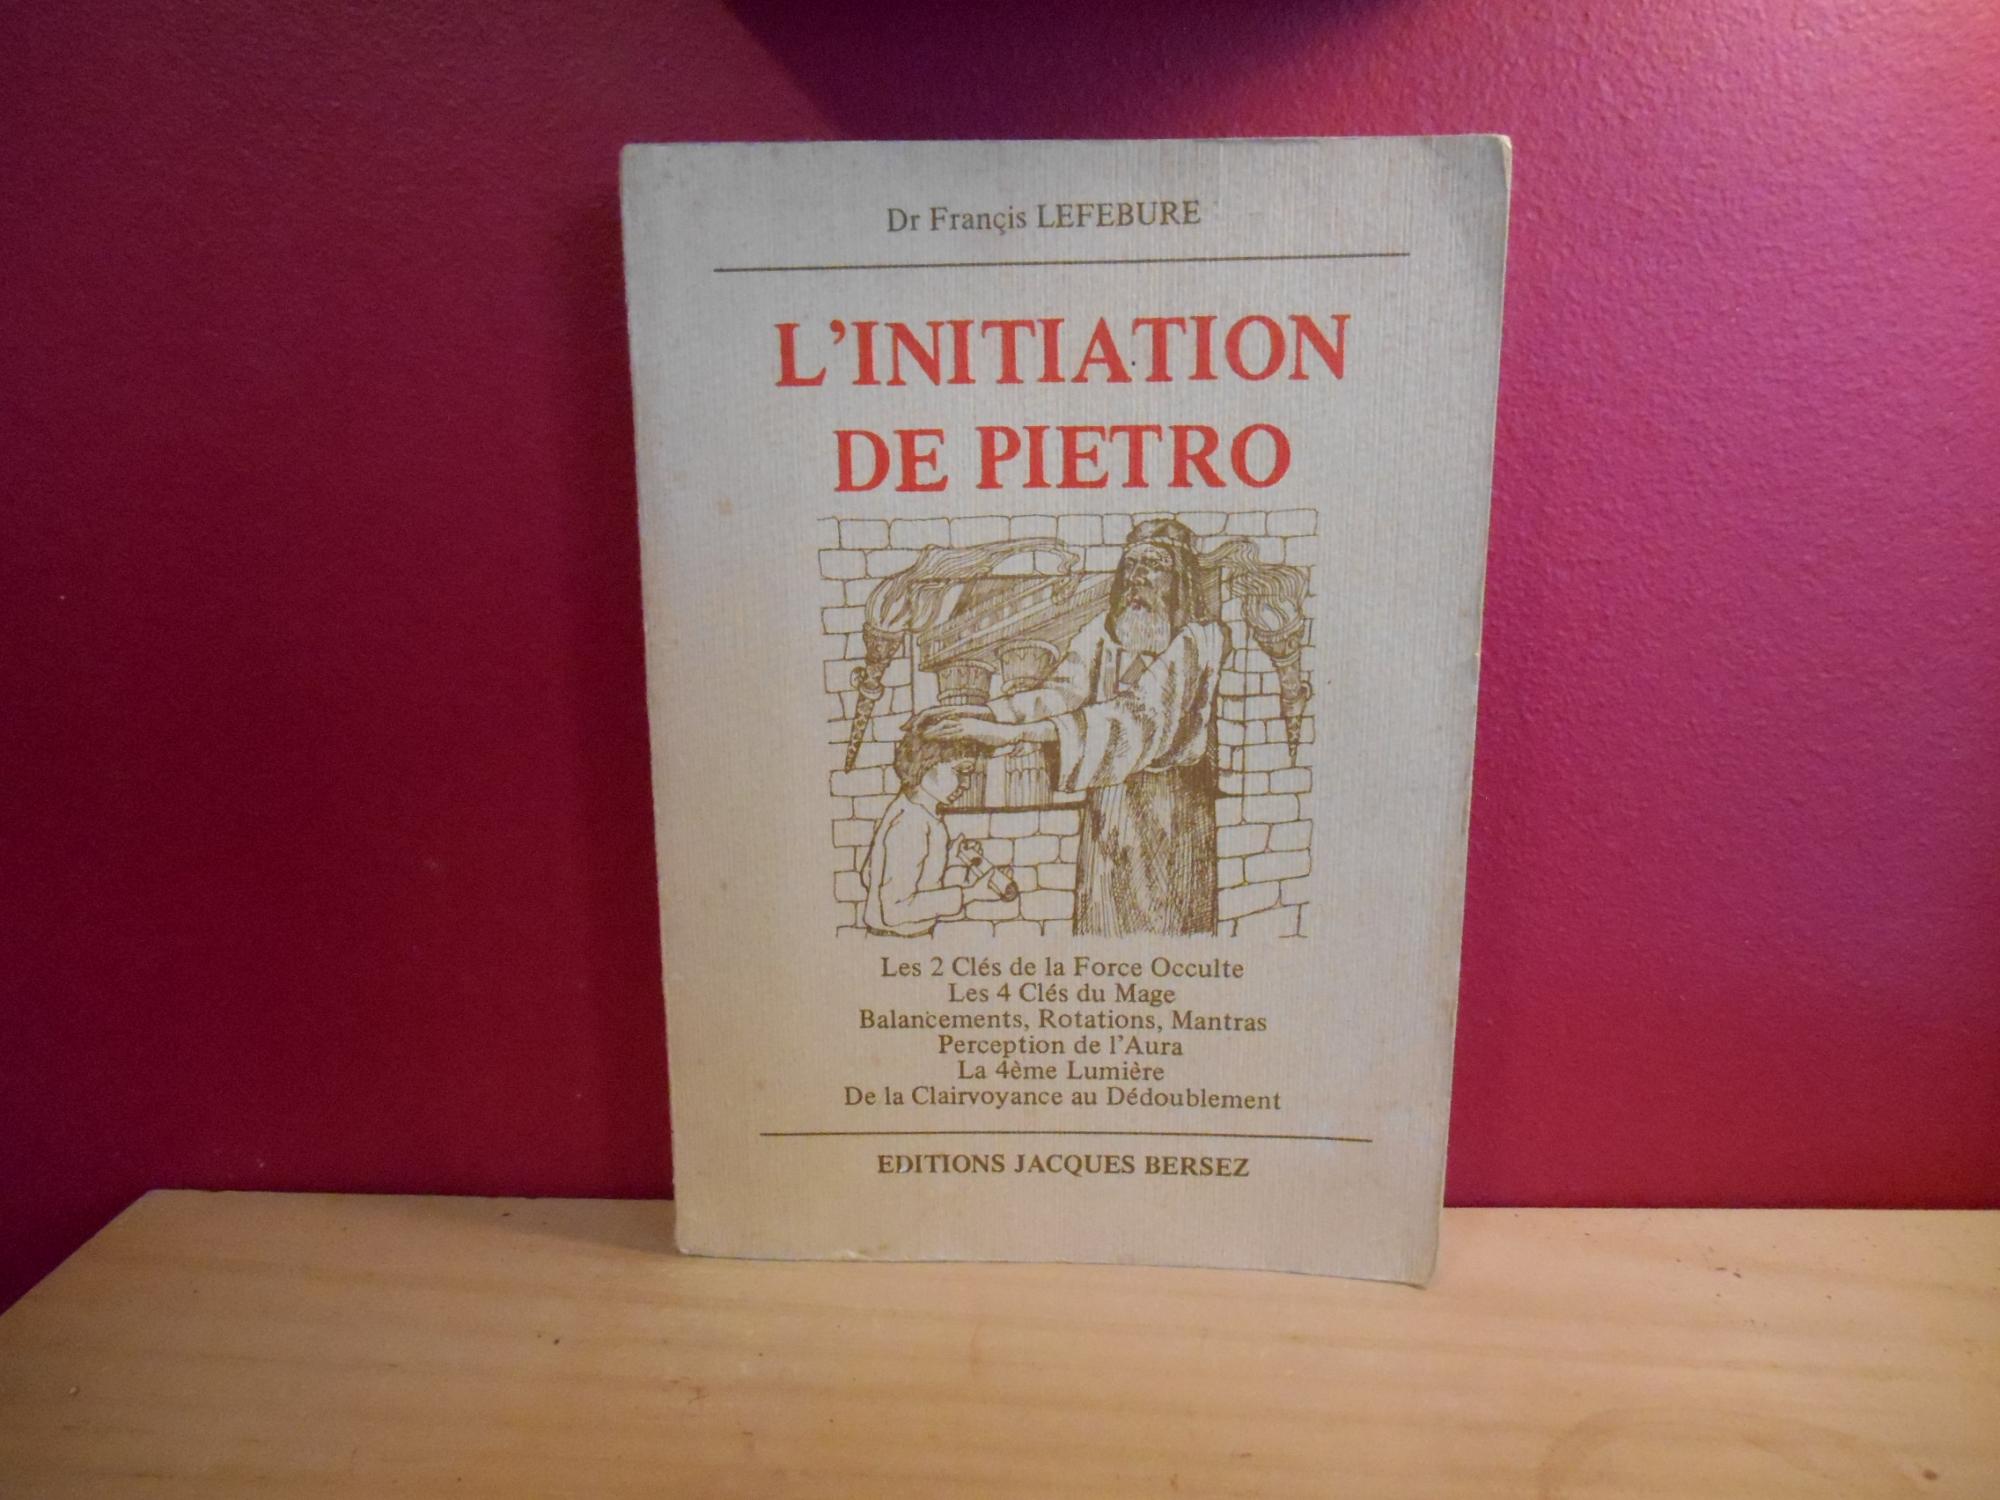 L'INITIATION DE PIETRO - DR. FRANCIS LEFEBURE